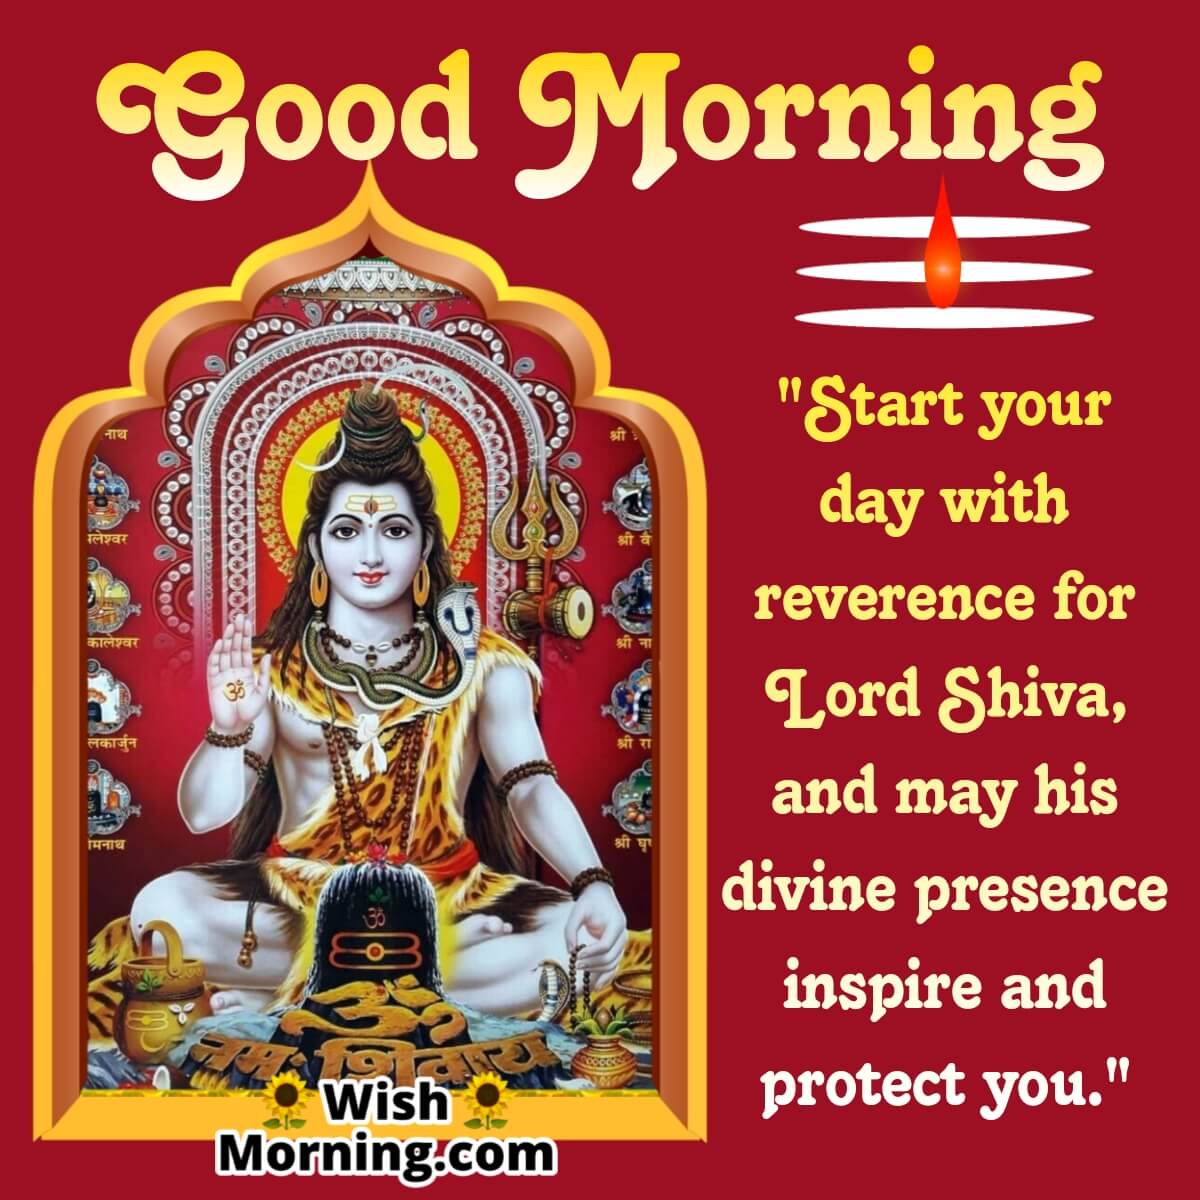 Good Morning Lord Shiva Inspiration